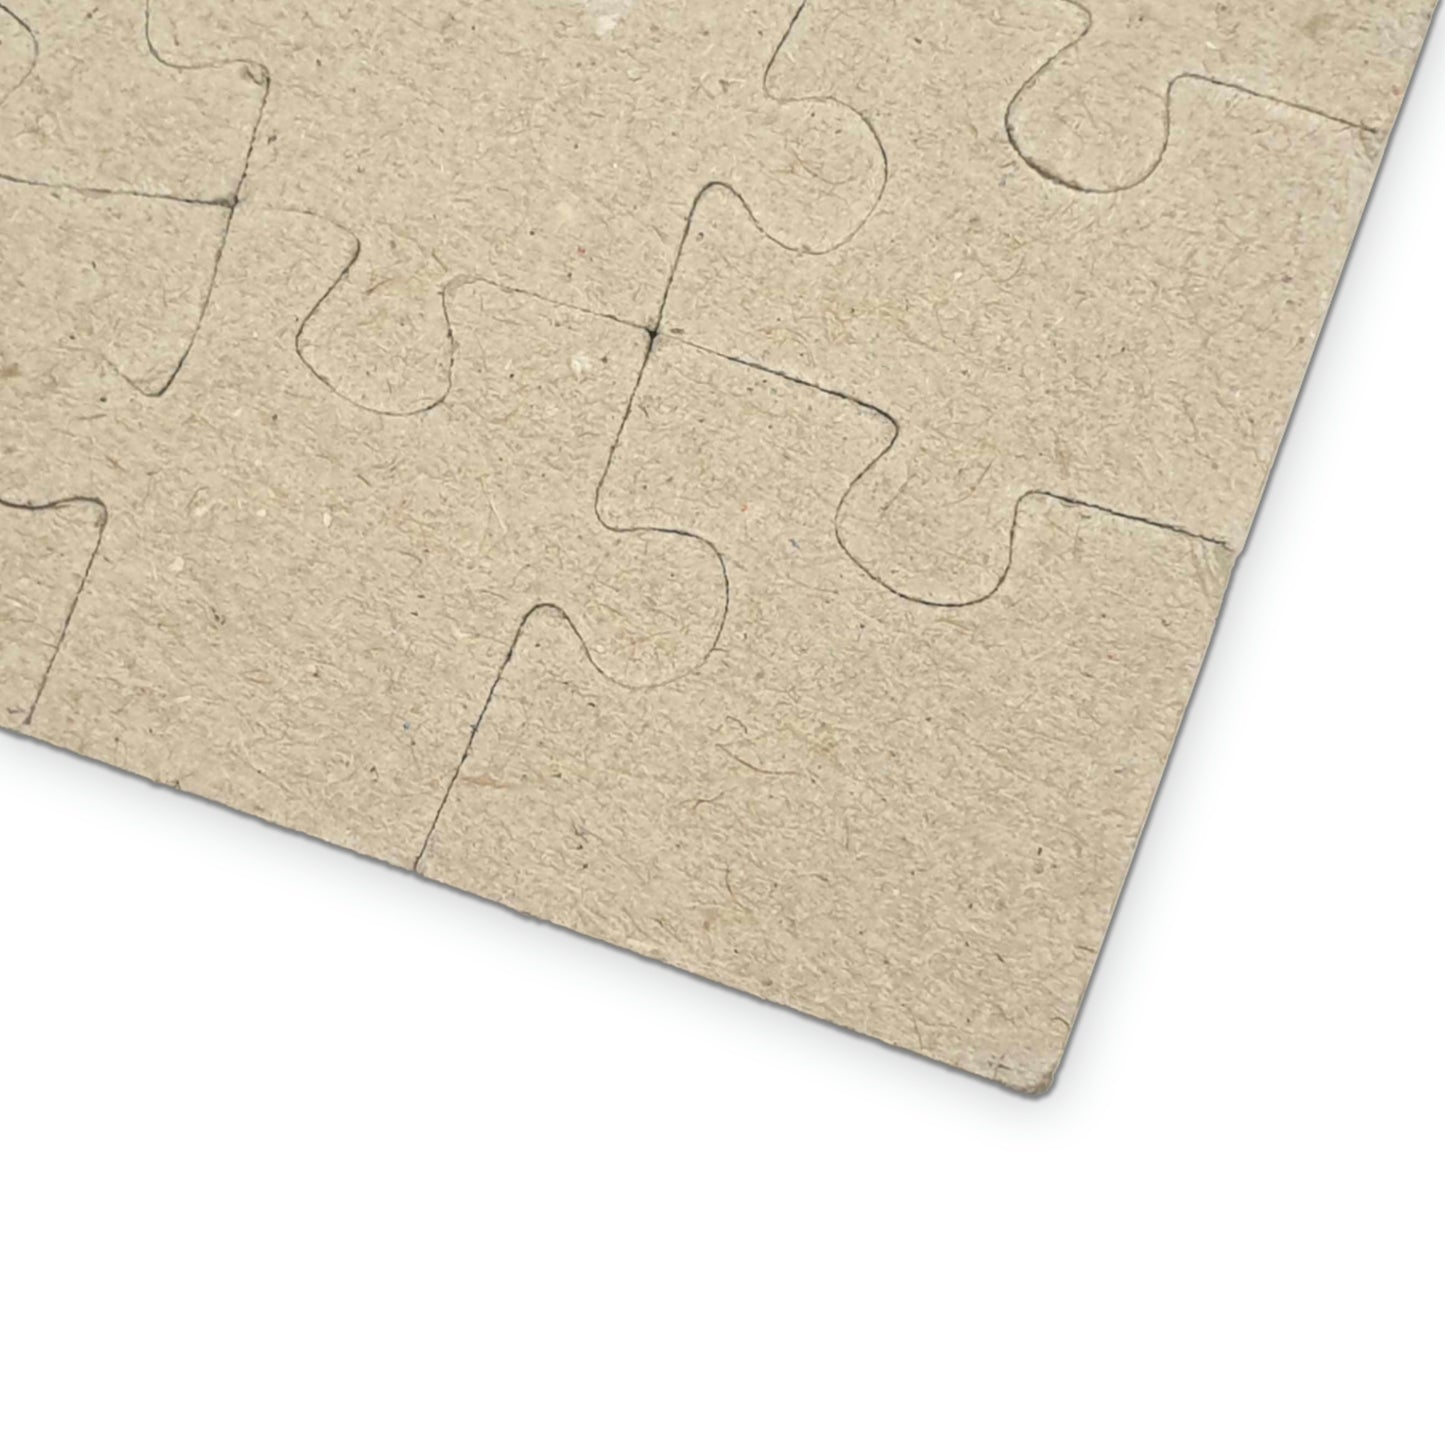 Derecho - 1000 Piece Jigsaw Puzzle